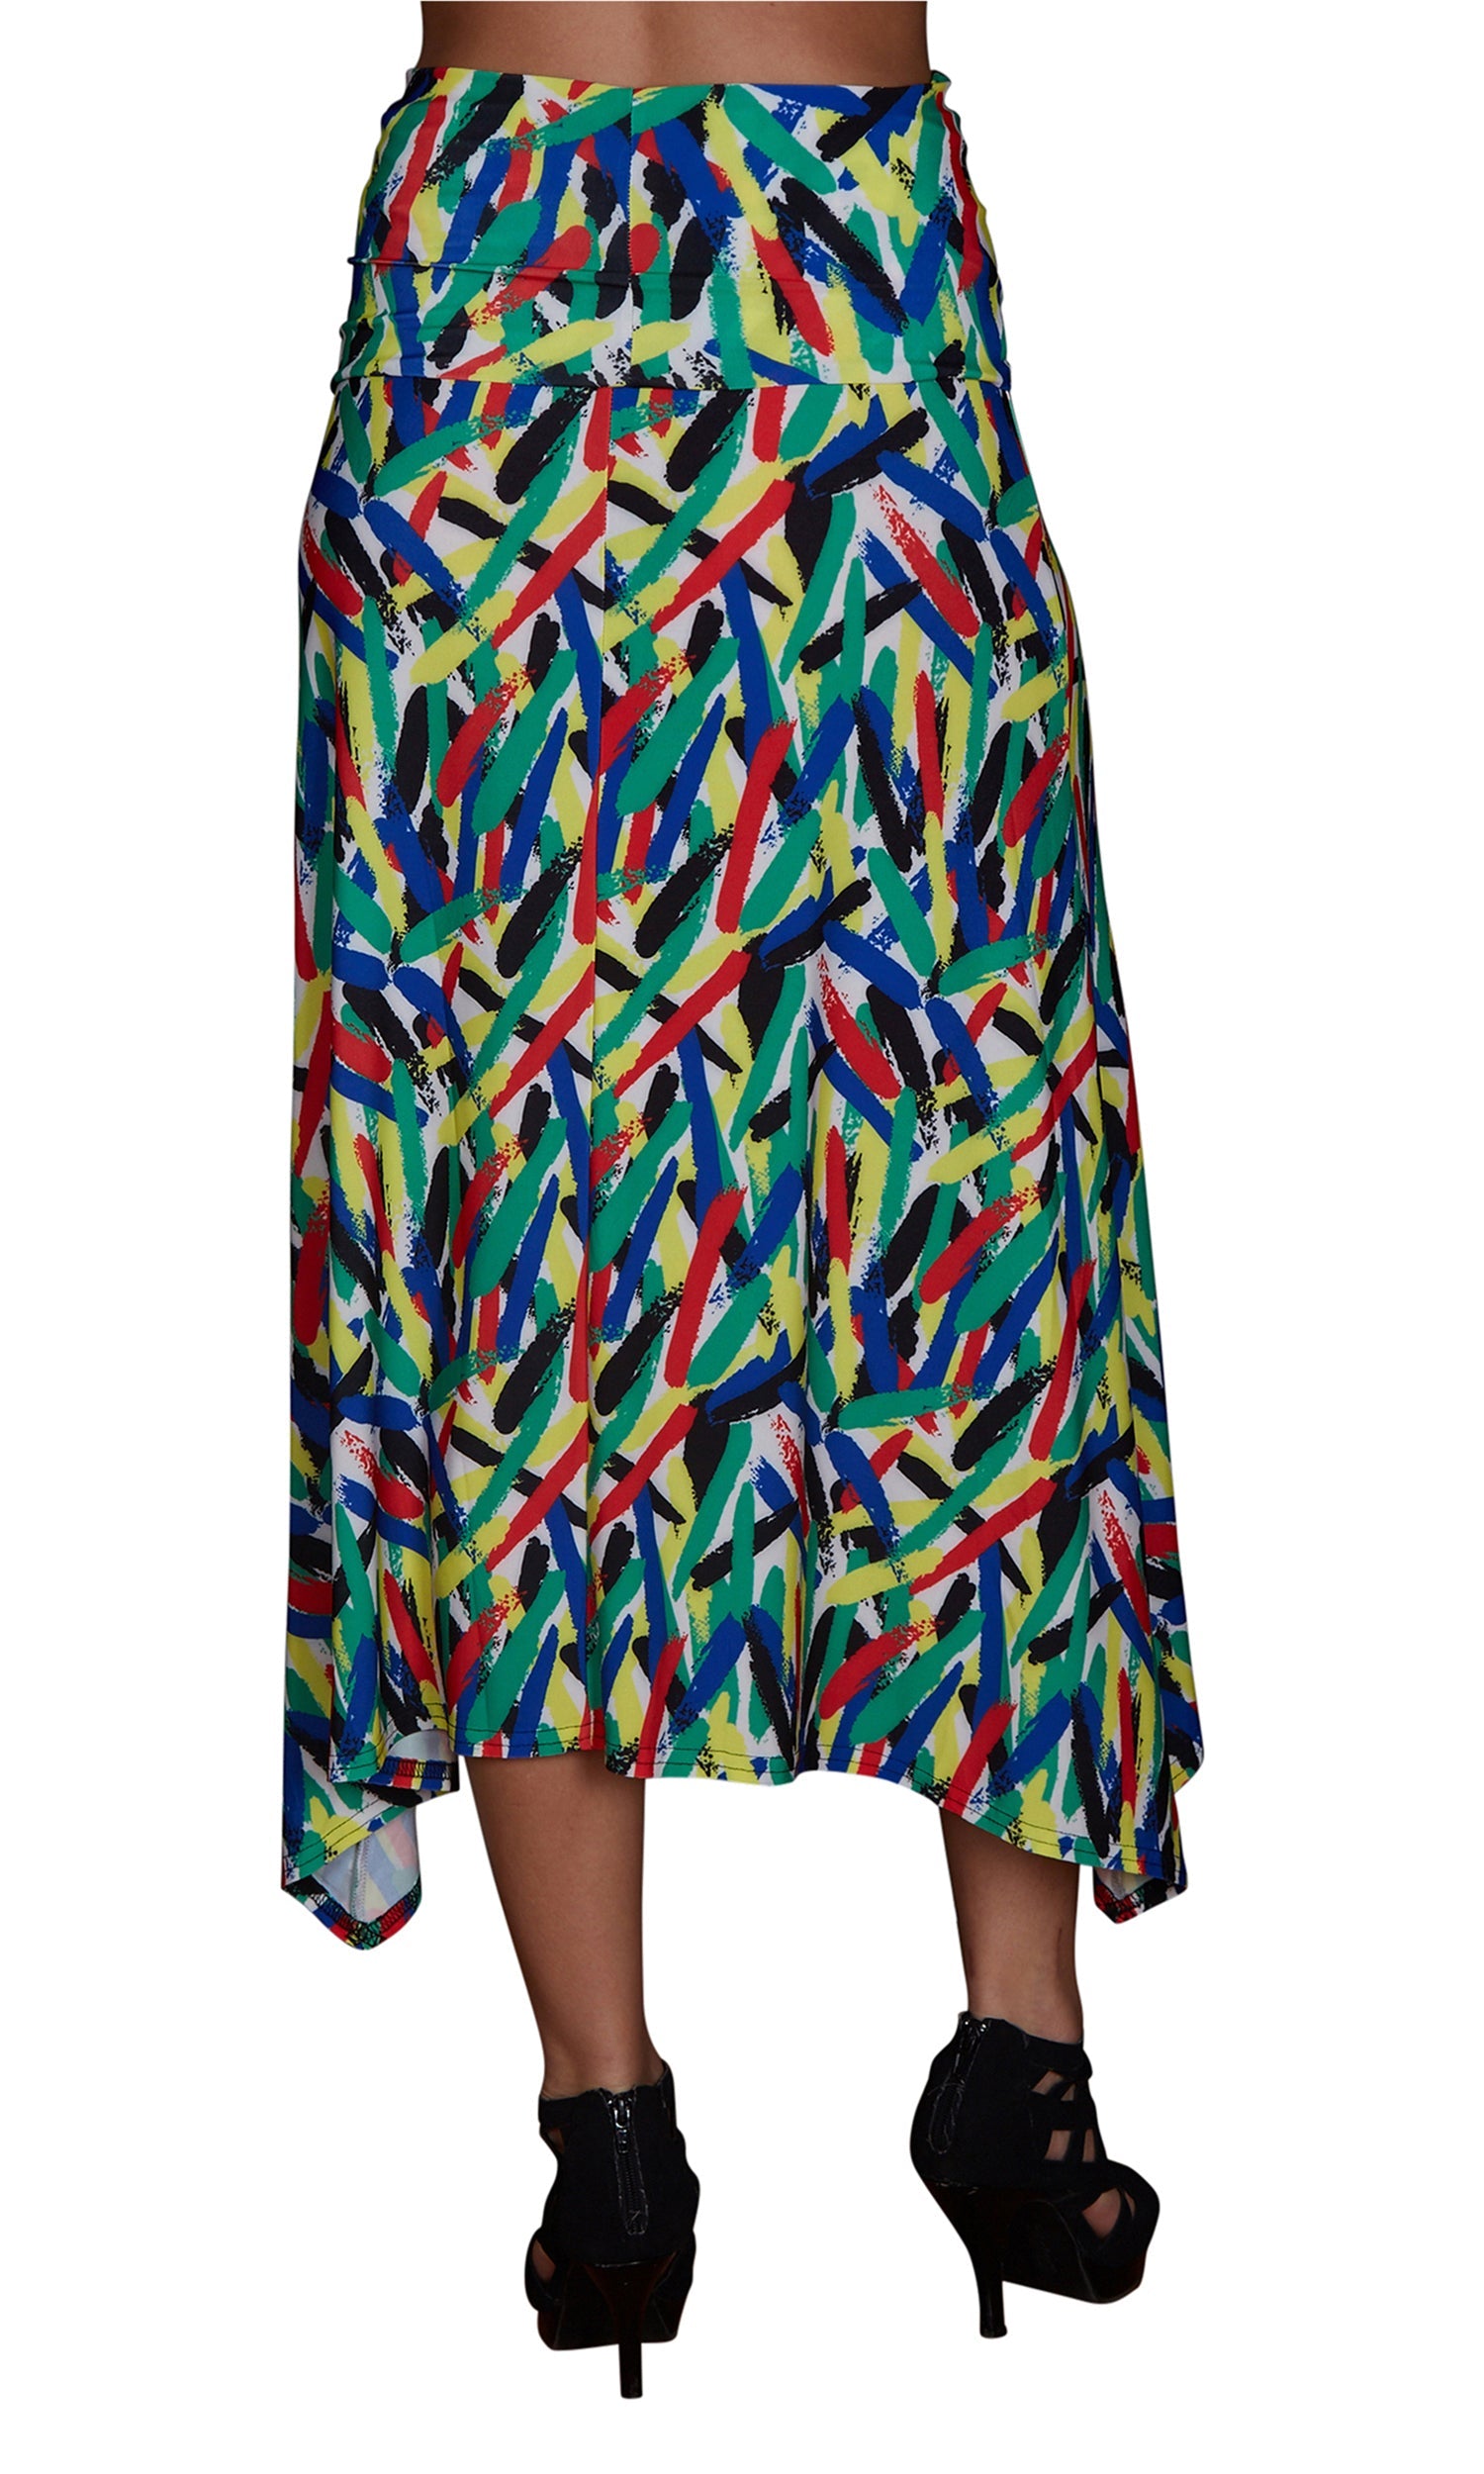 Viereck Chrysler Maxi Skirt/Dress